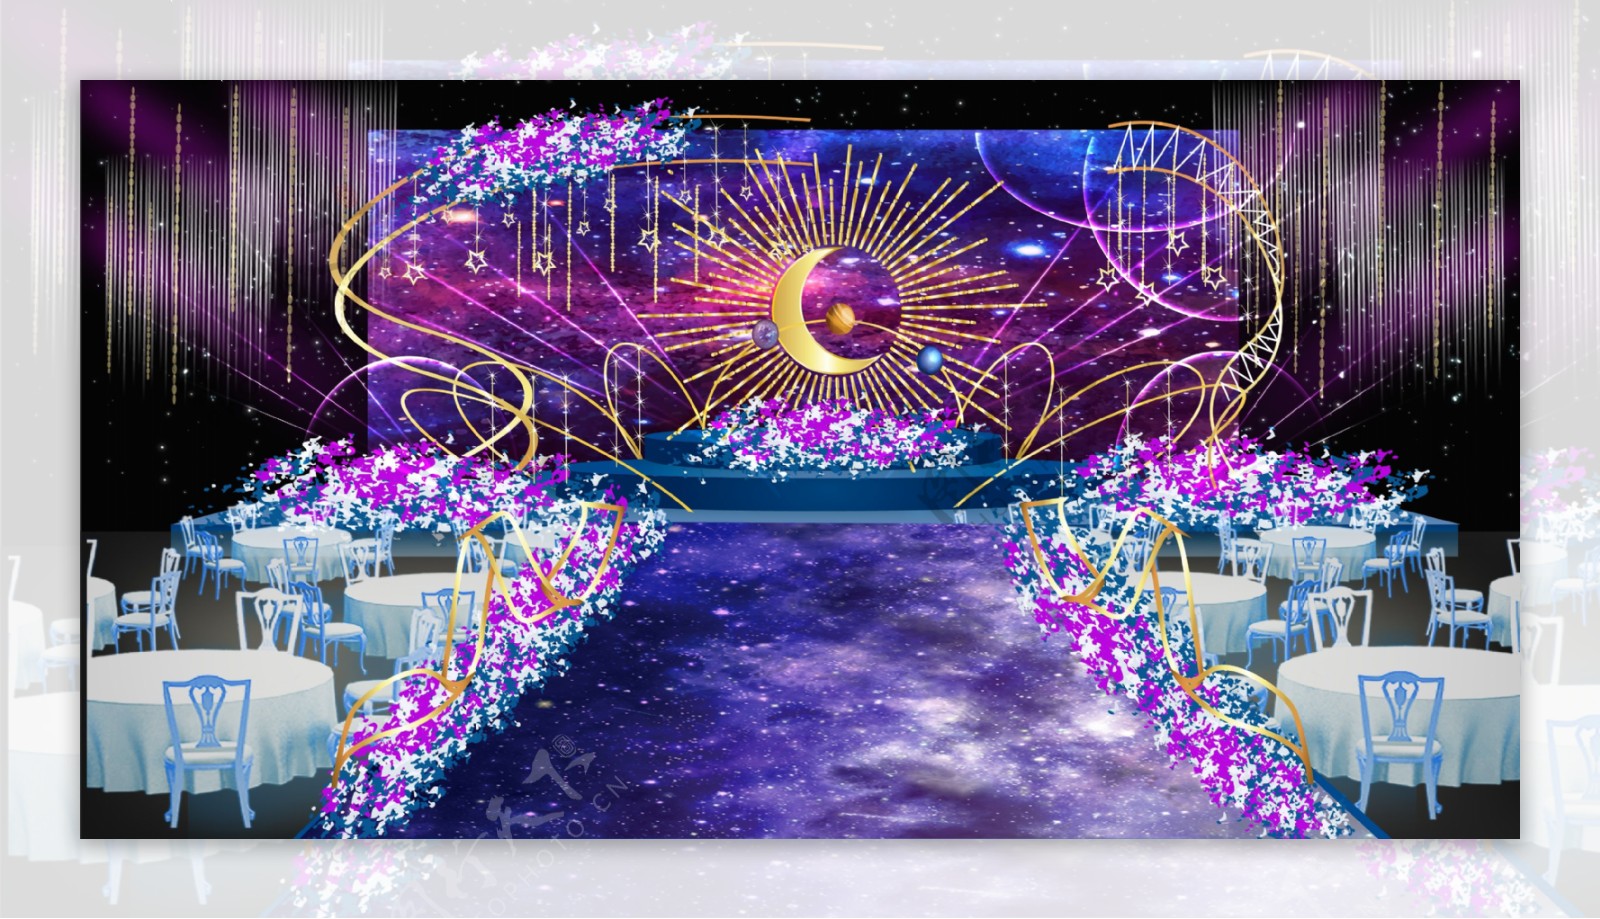 紫色星空婚礼舞台效果图设计